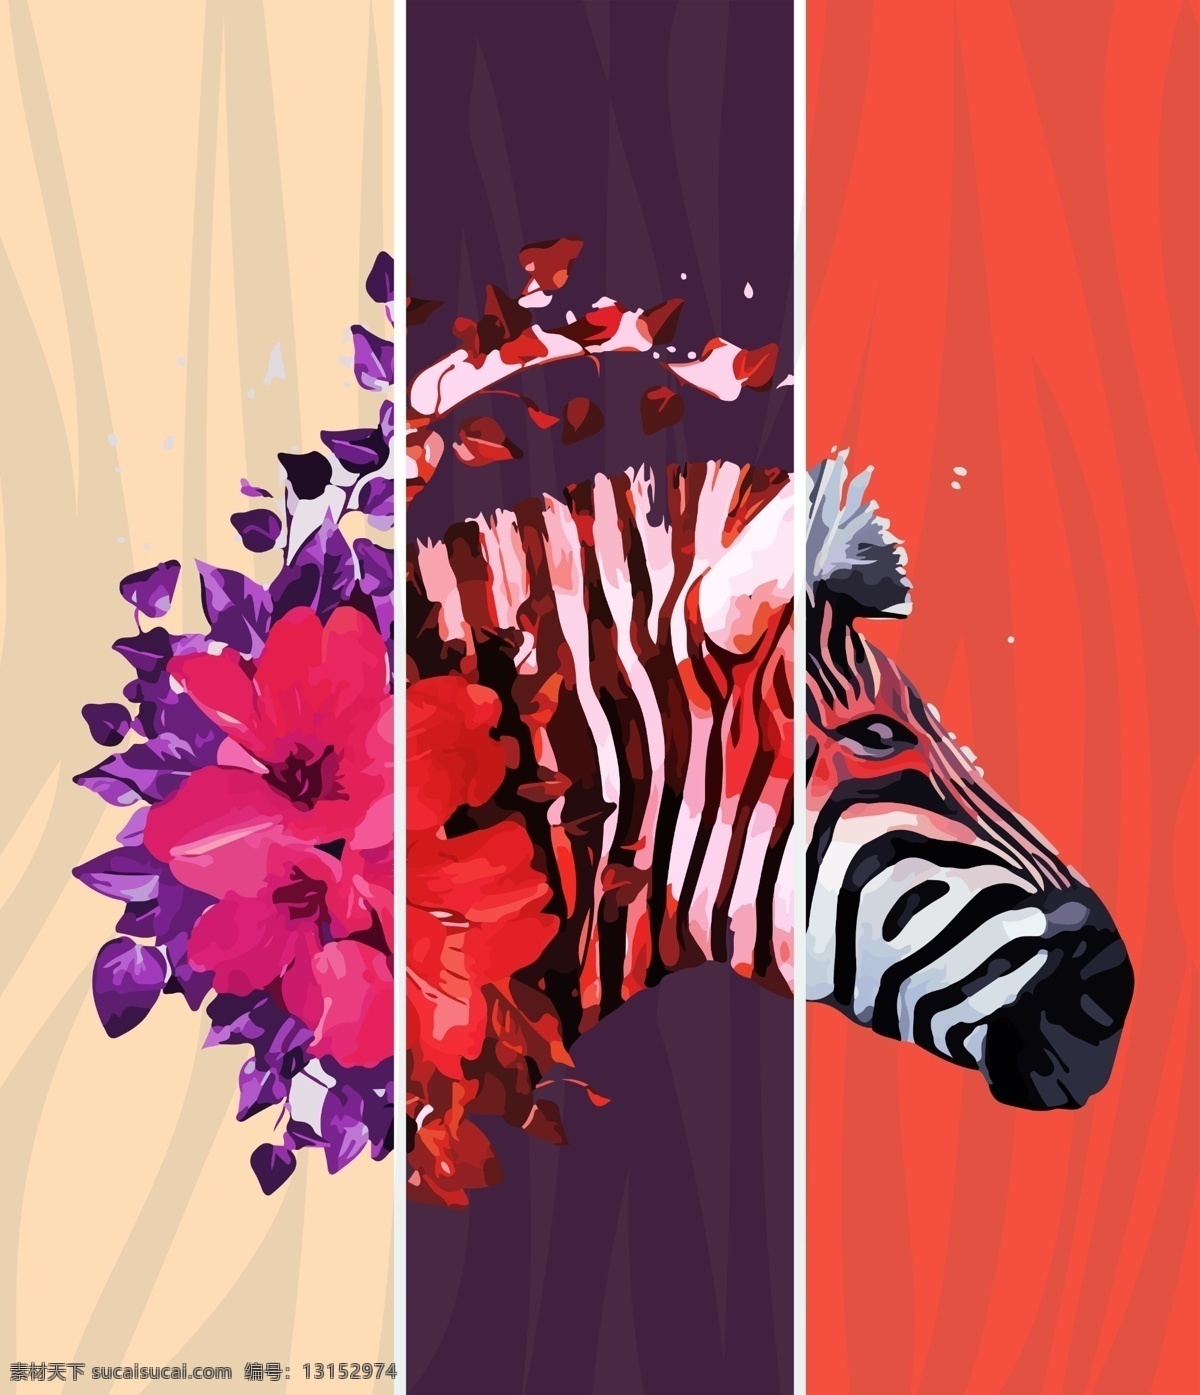 斑马先生 斑马 纹理 壁纸 壁画 挂画 色彩 动物 服装图案 花朵 植物 面料图库 红色 紫色 装饰